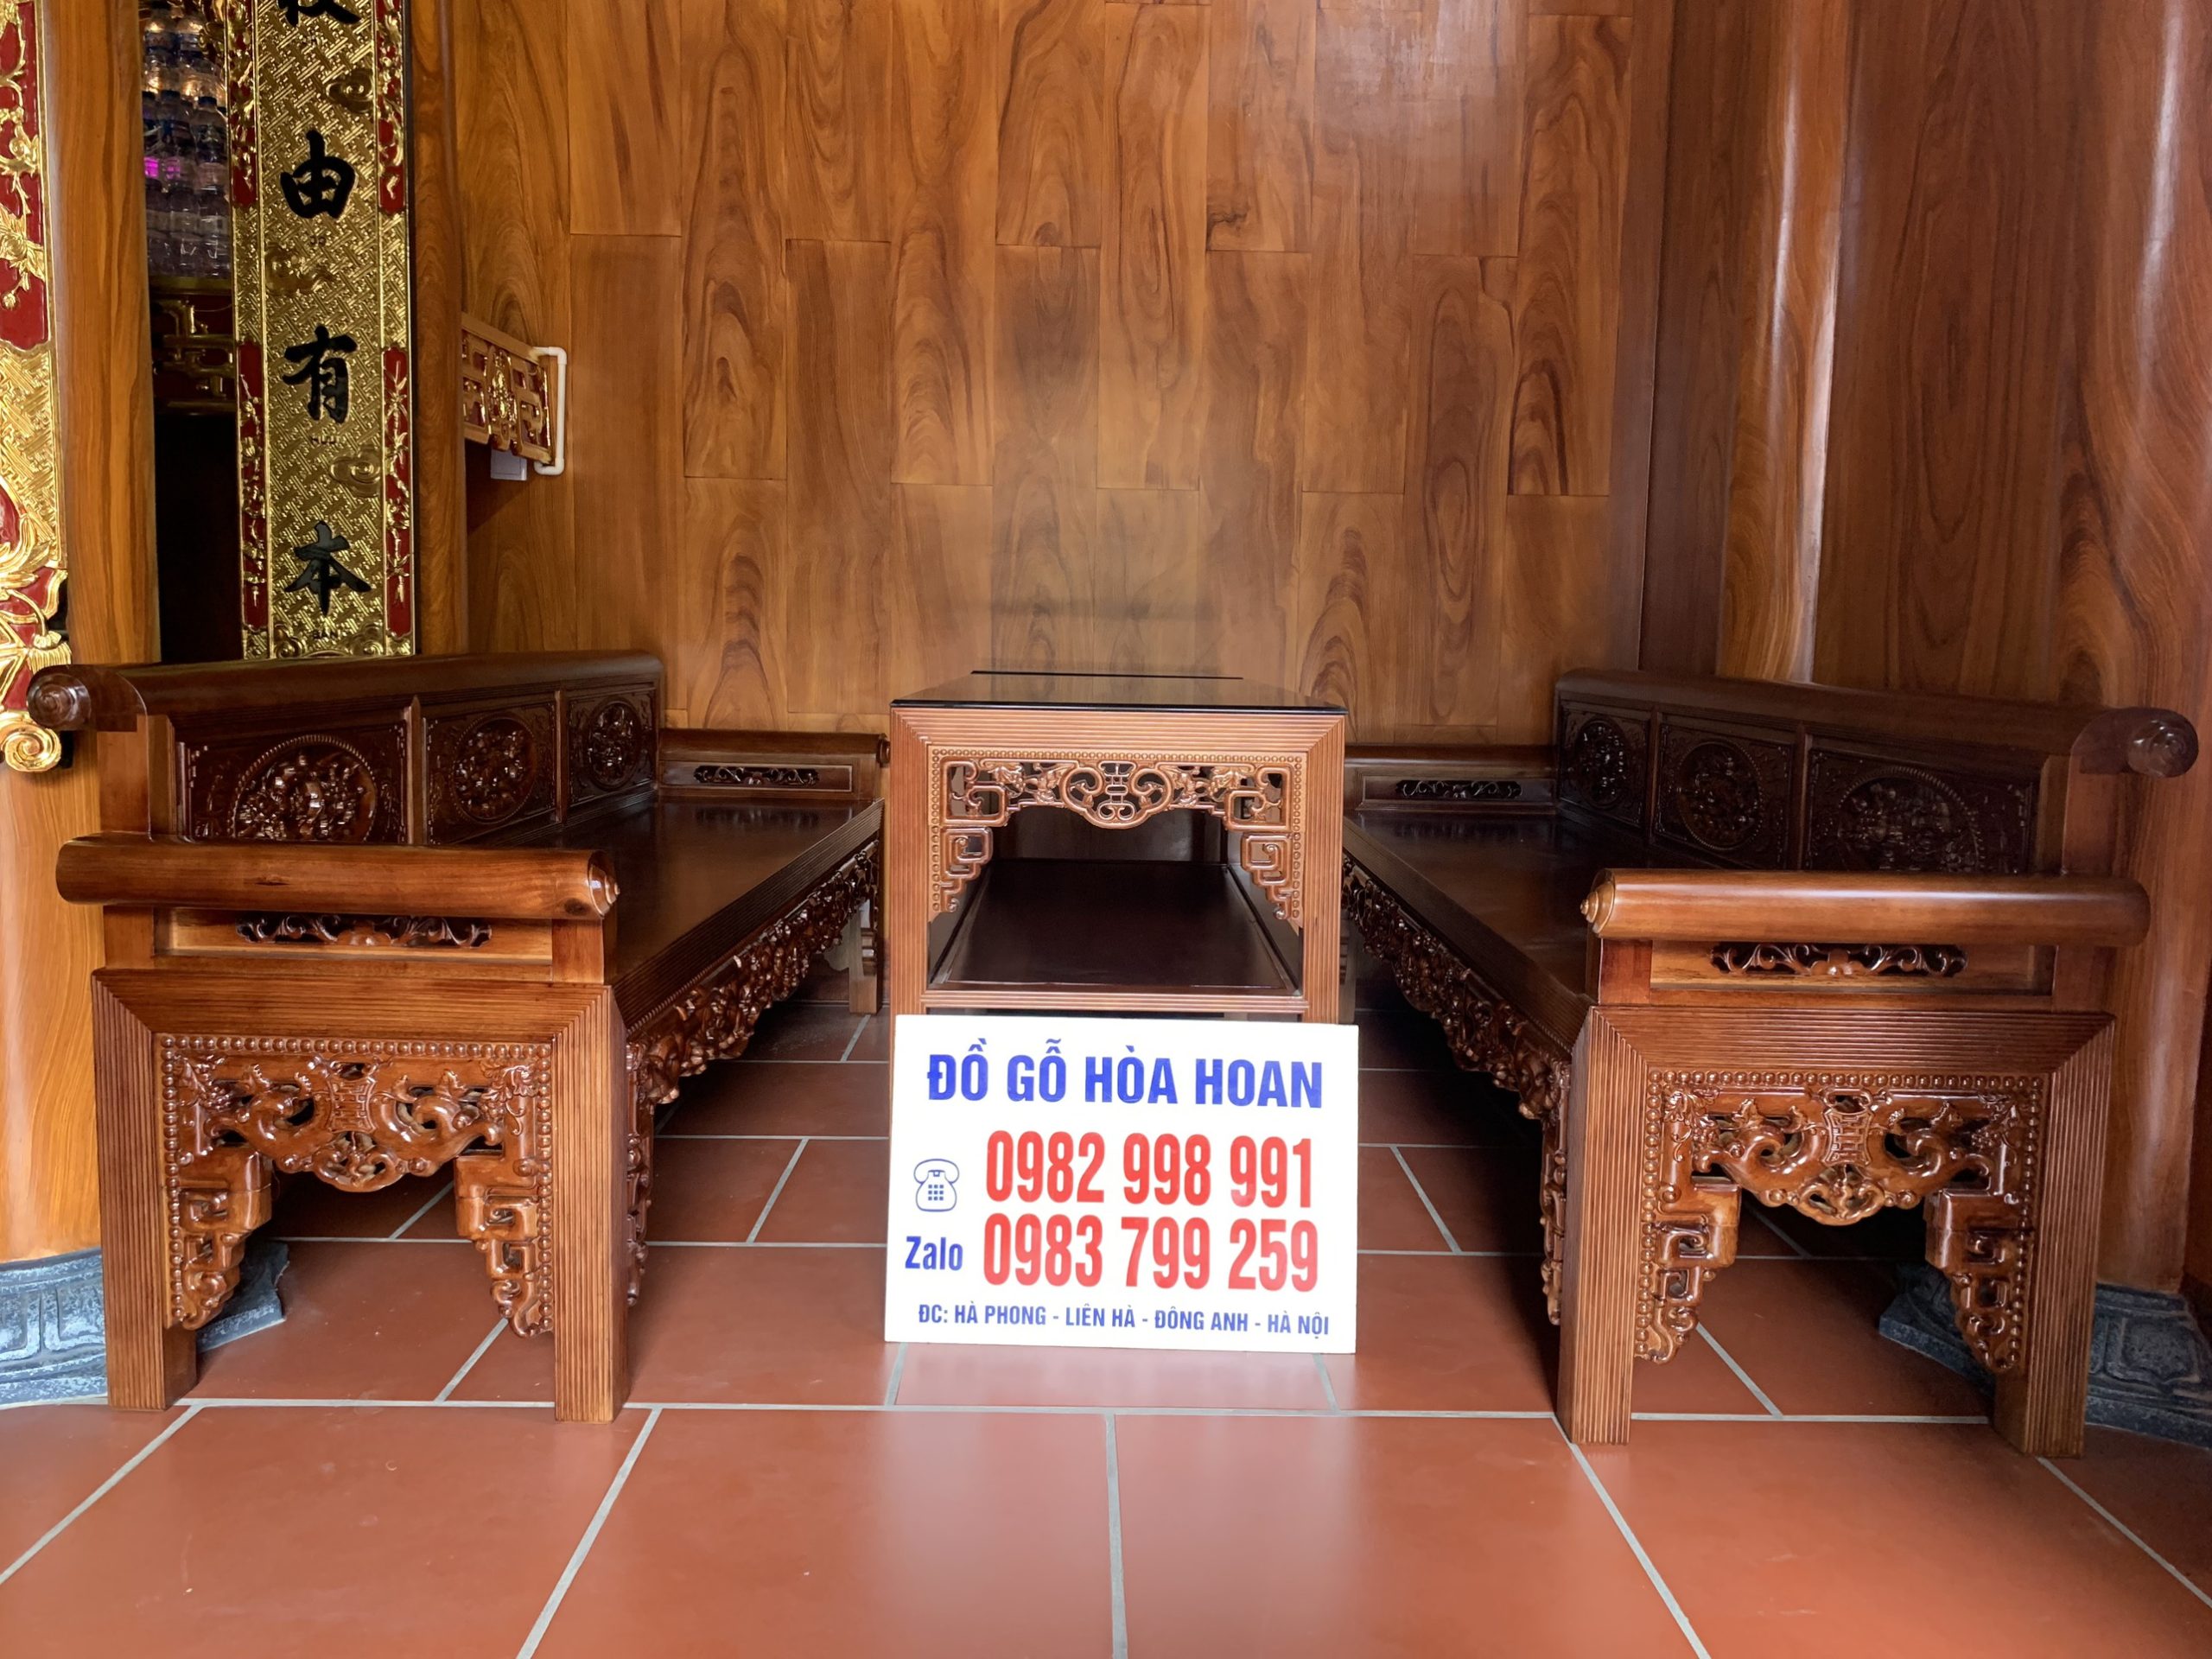 Đặc điểm của bàn ghế trường kỷ gỗ Lim 